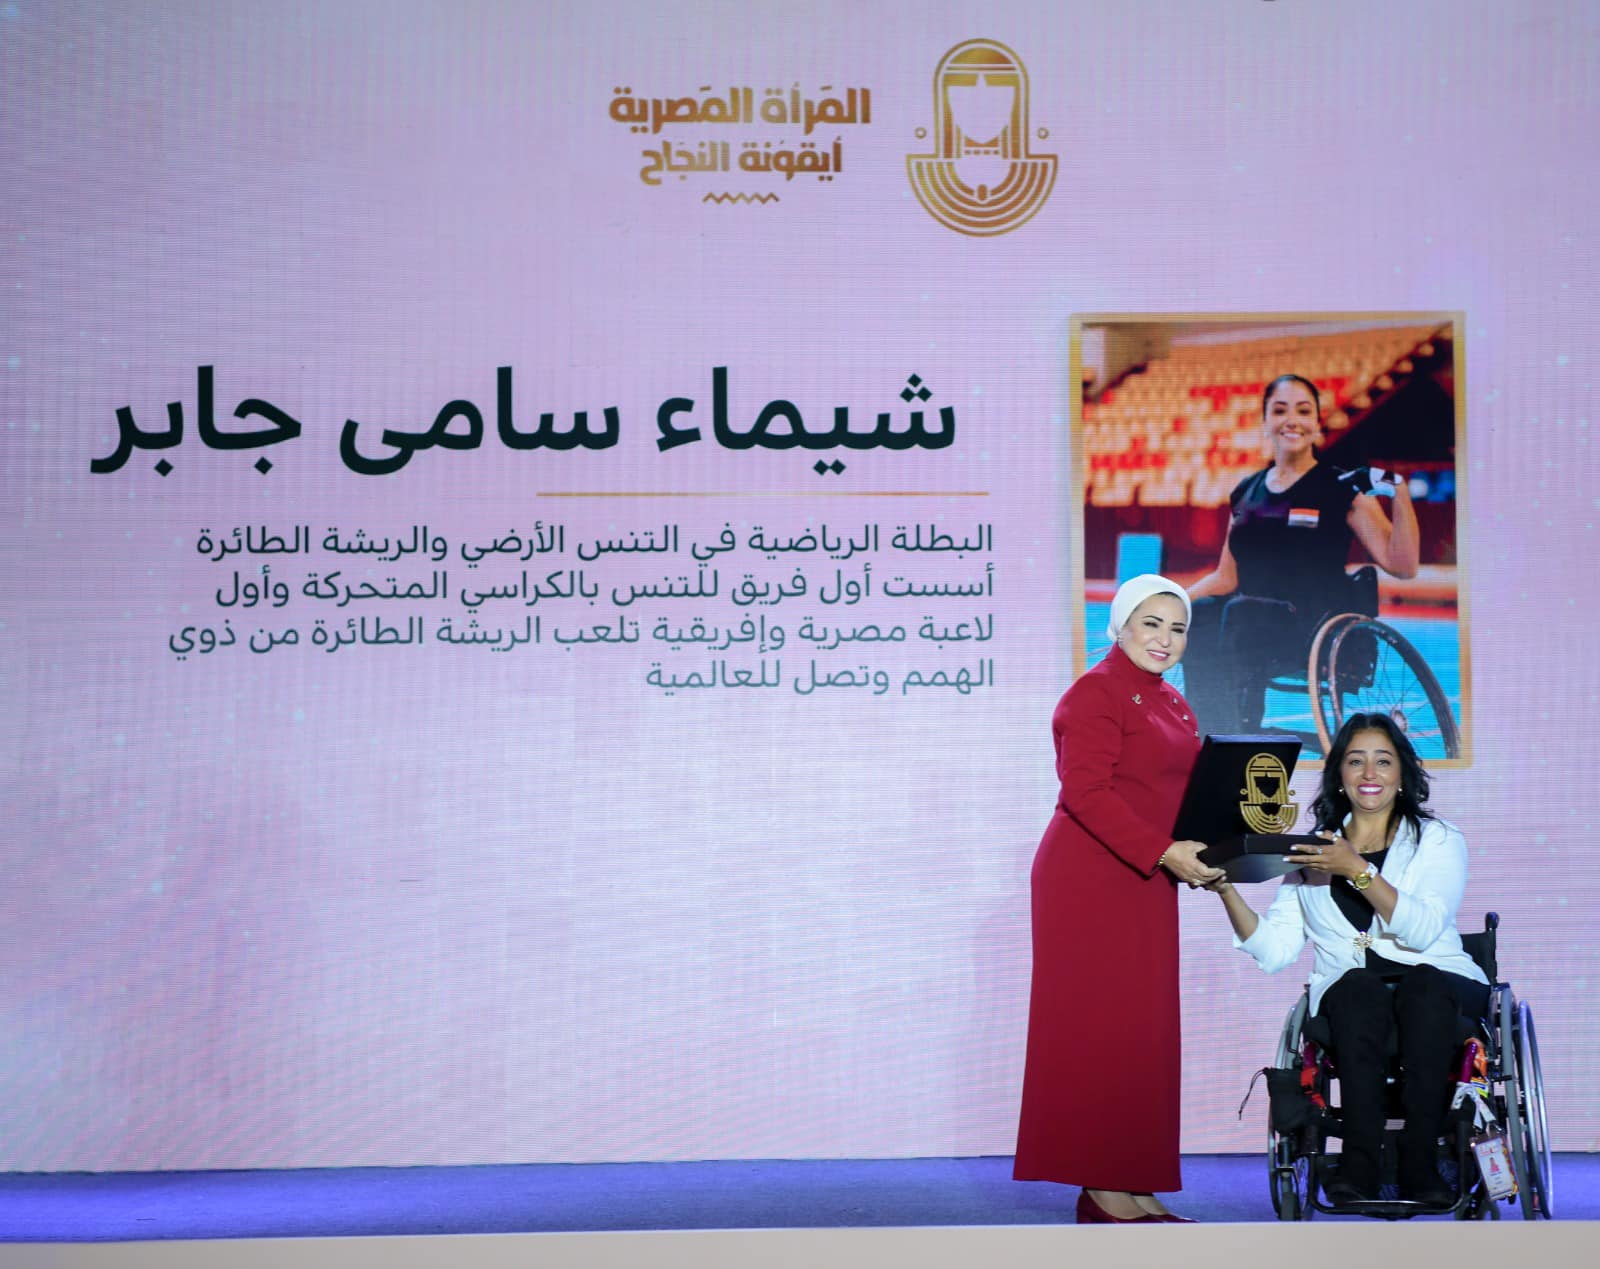 انتصار السيسي: المرأة المصرية مصدر إلهام ورمزا للتميز والعطاء 13